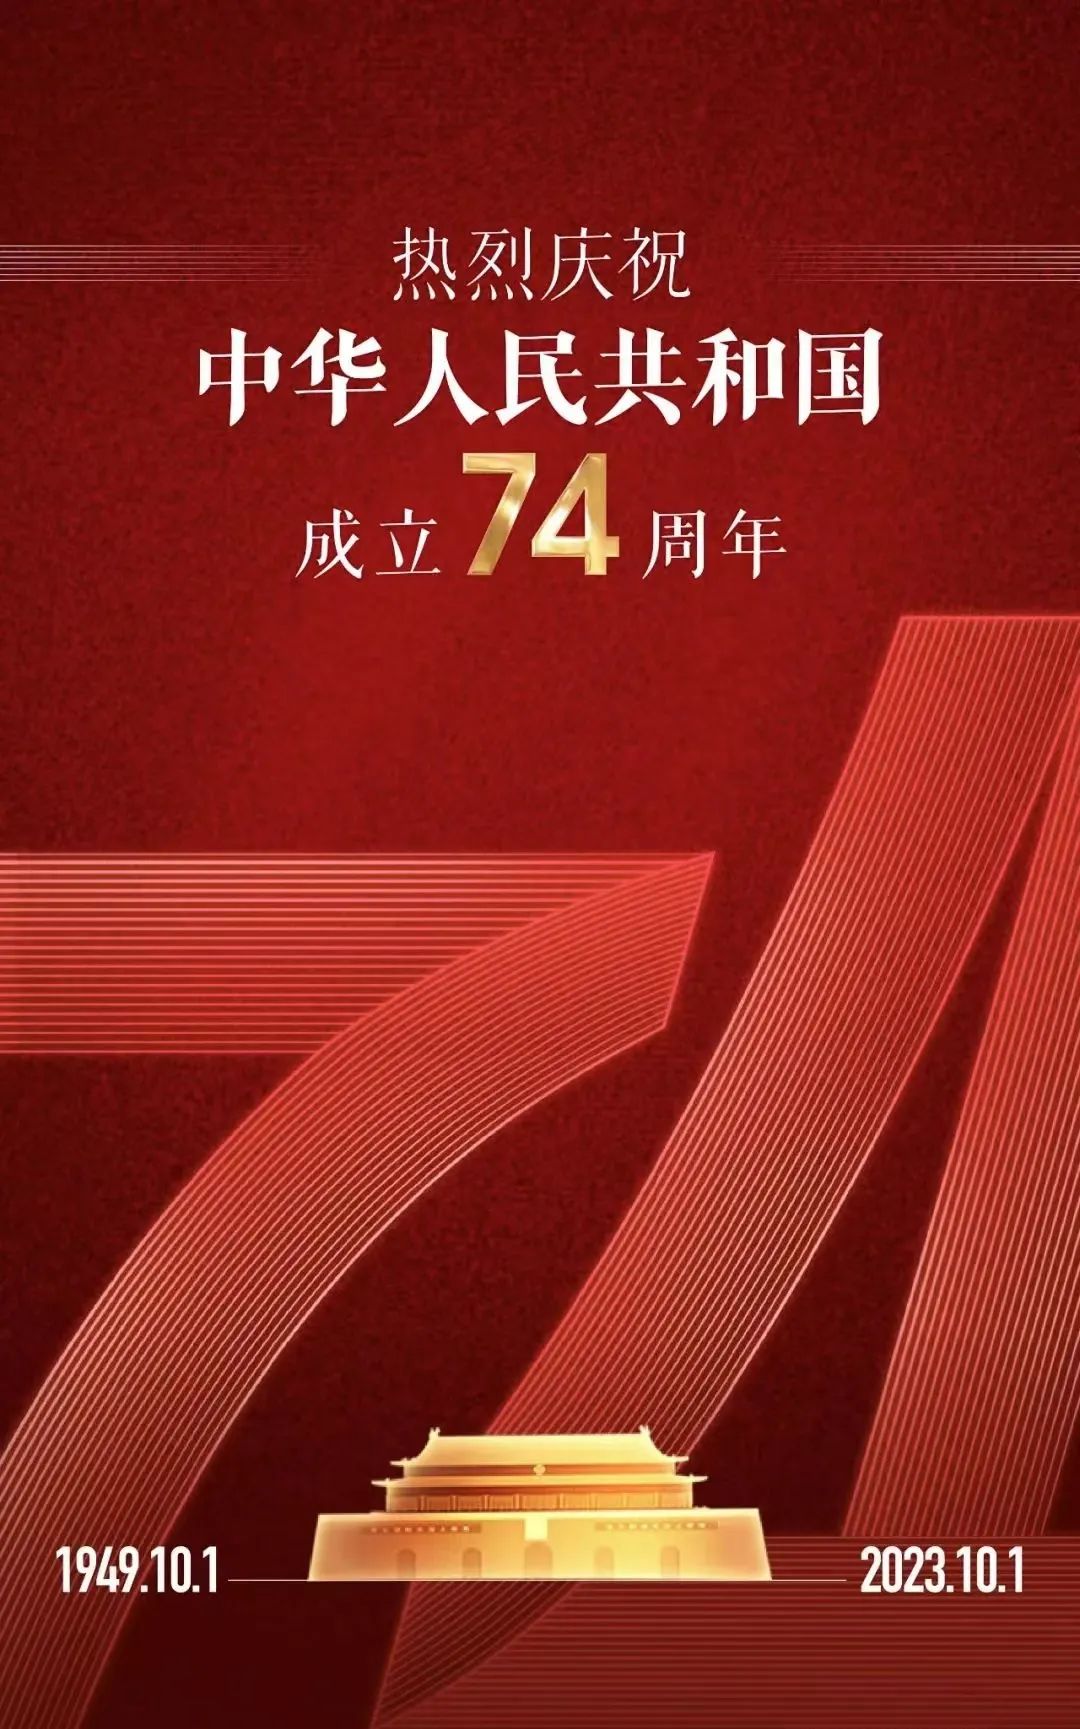 吉阳集团  热烈庆祝  国庆74周年！